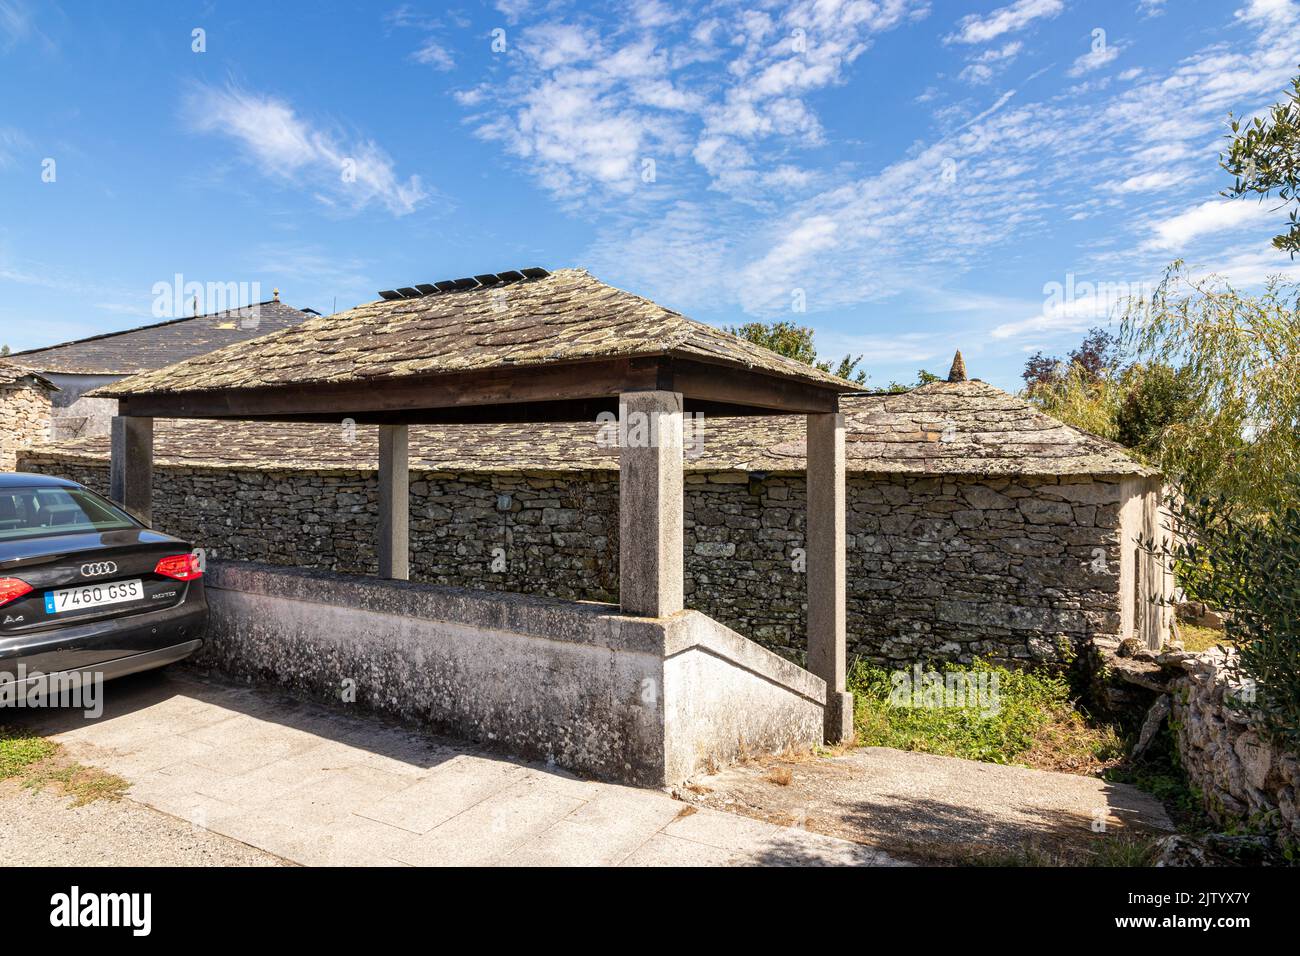 Boveda de Mera, España. Lavadoiro tradicional (lavadero público) en este pequeño pueblo de Galicia Foto de stock